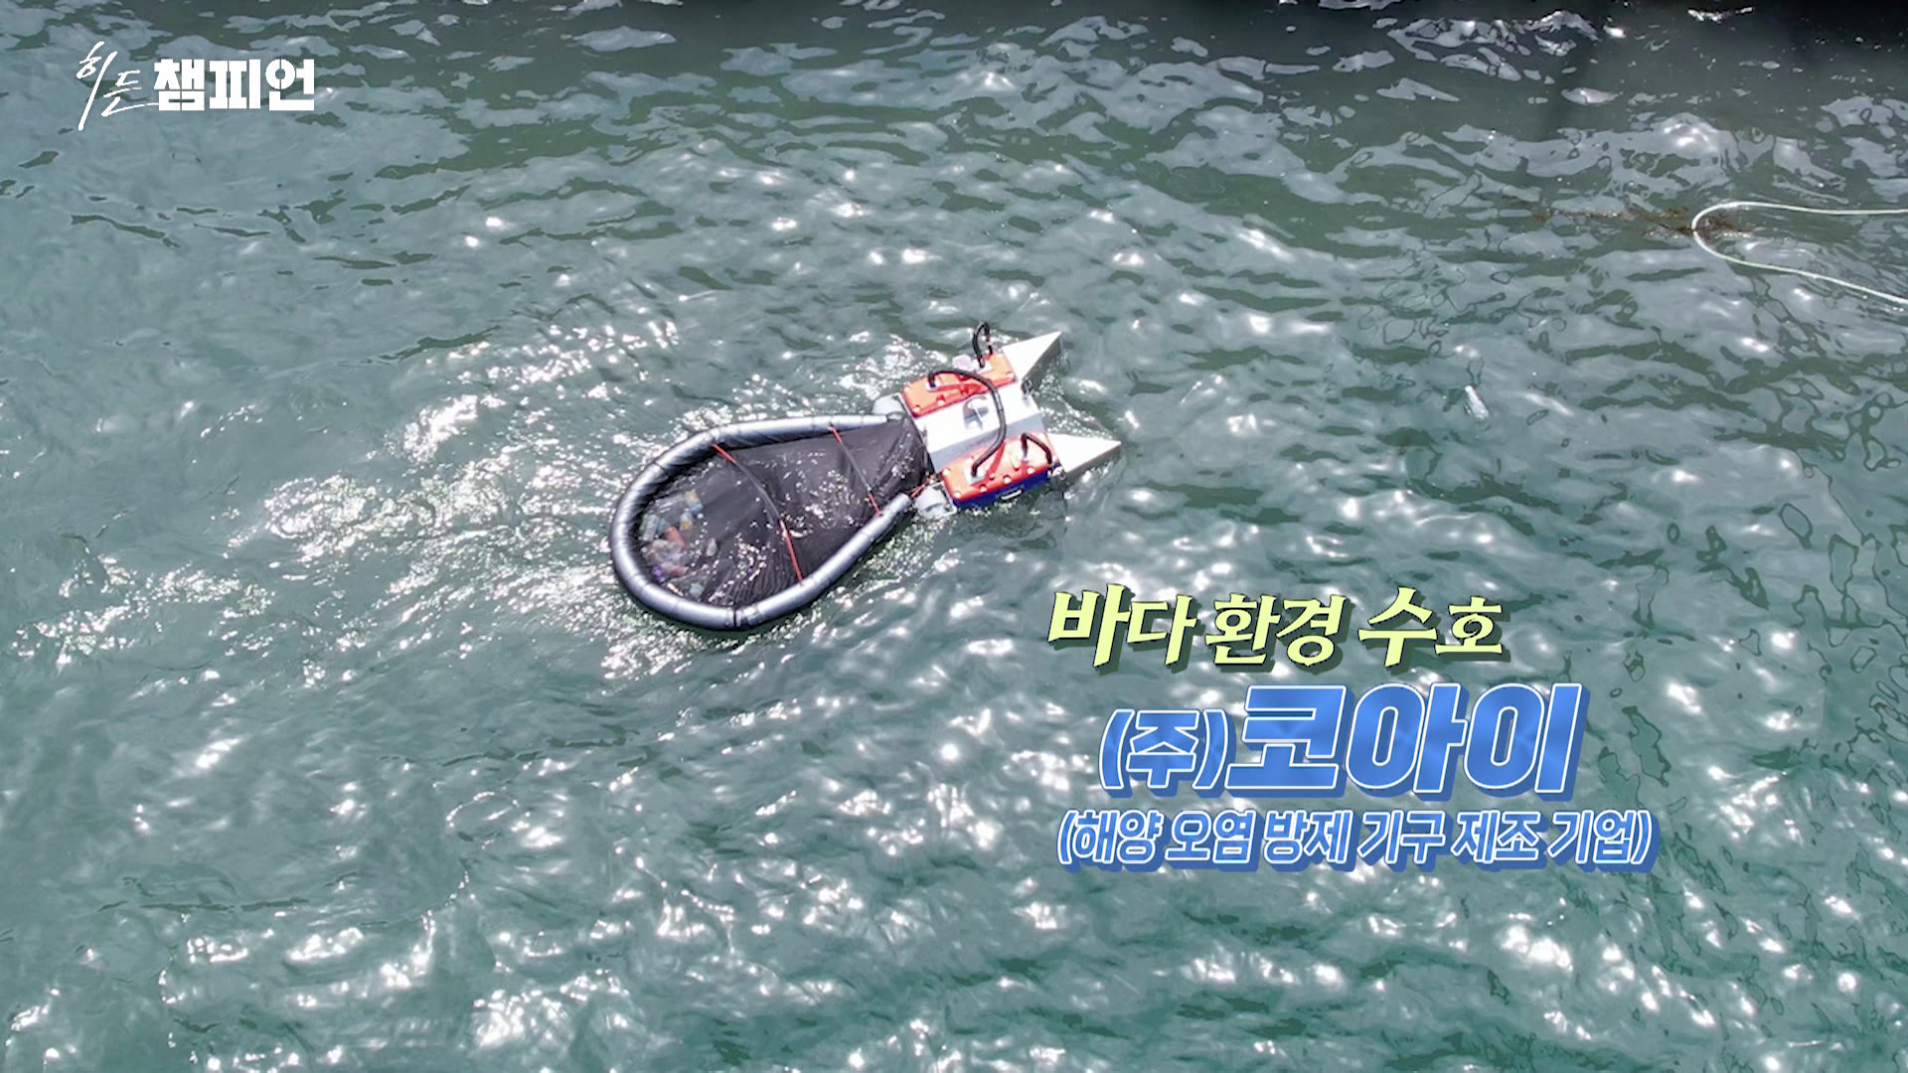 바다 환경을 지키는 수호자 '코아이' 히든챔피언 62회